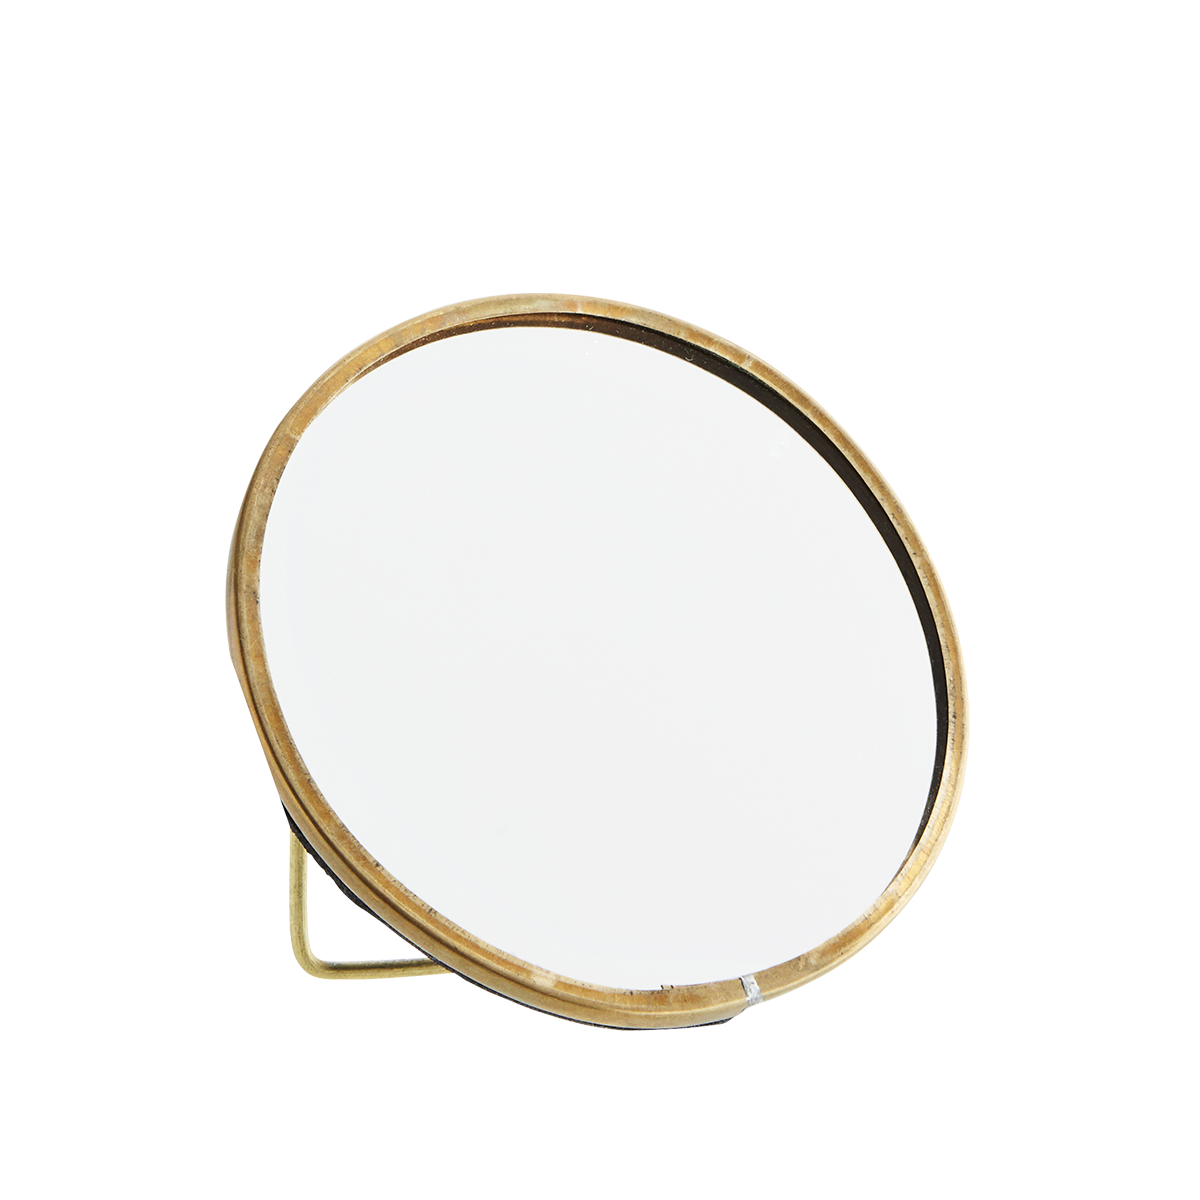 Round standing mirror